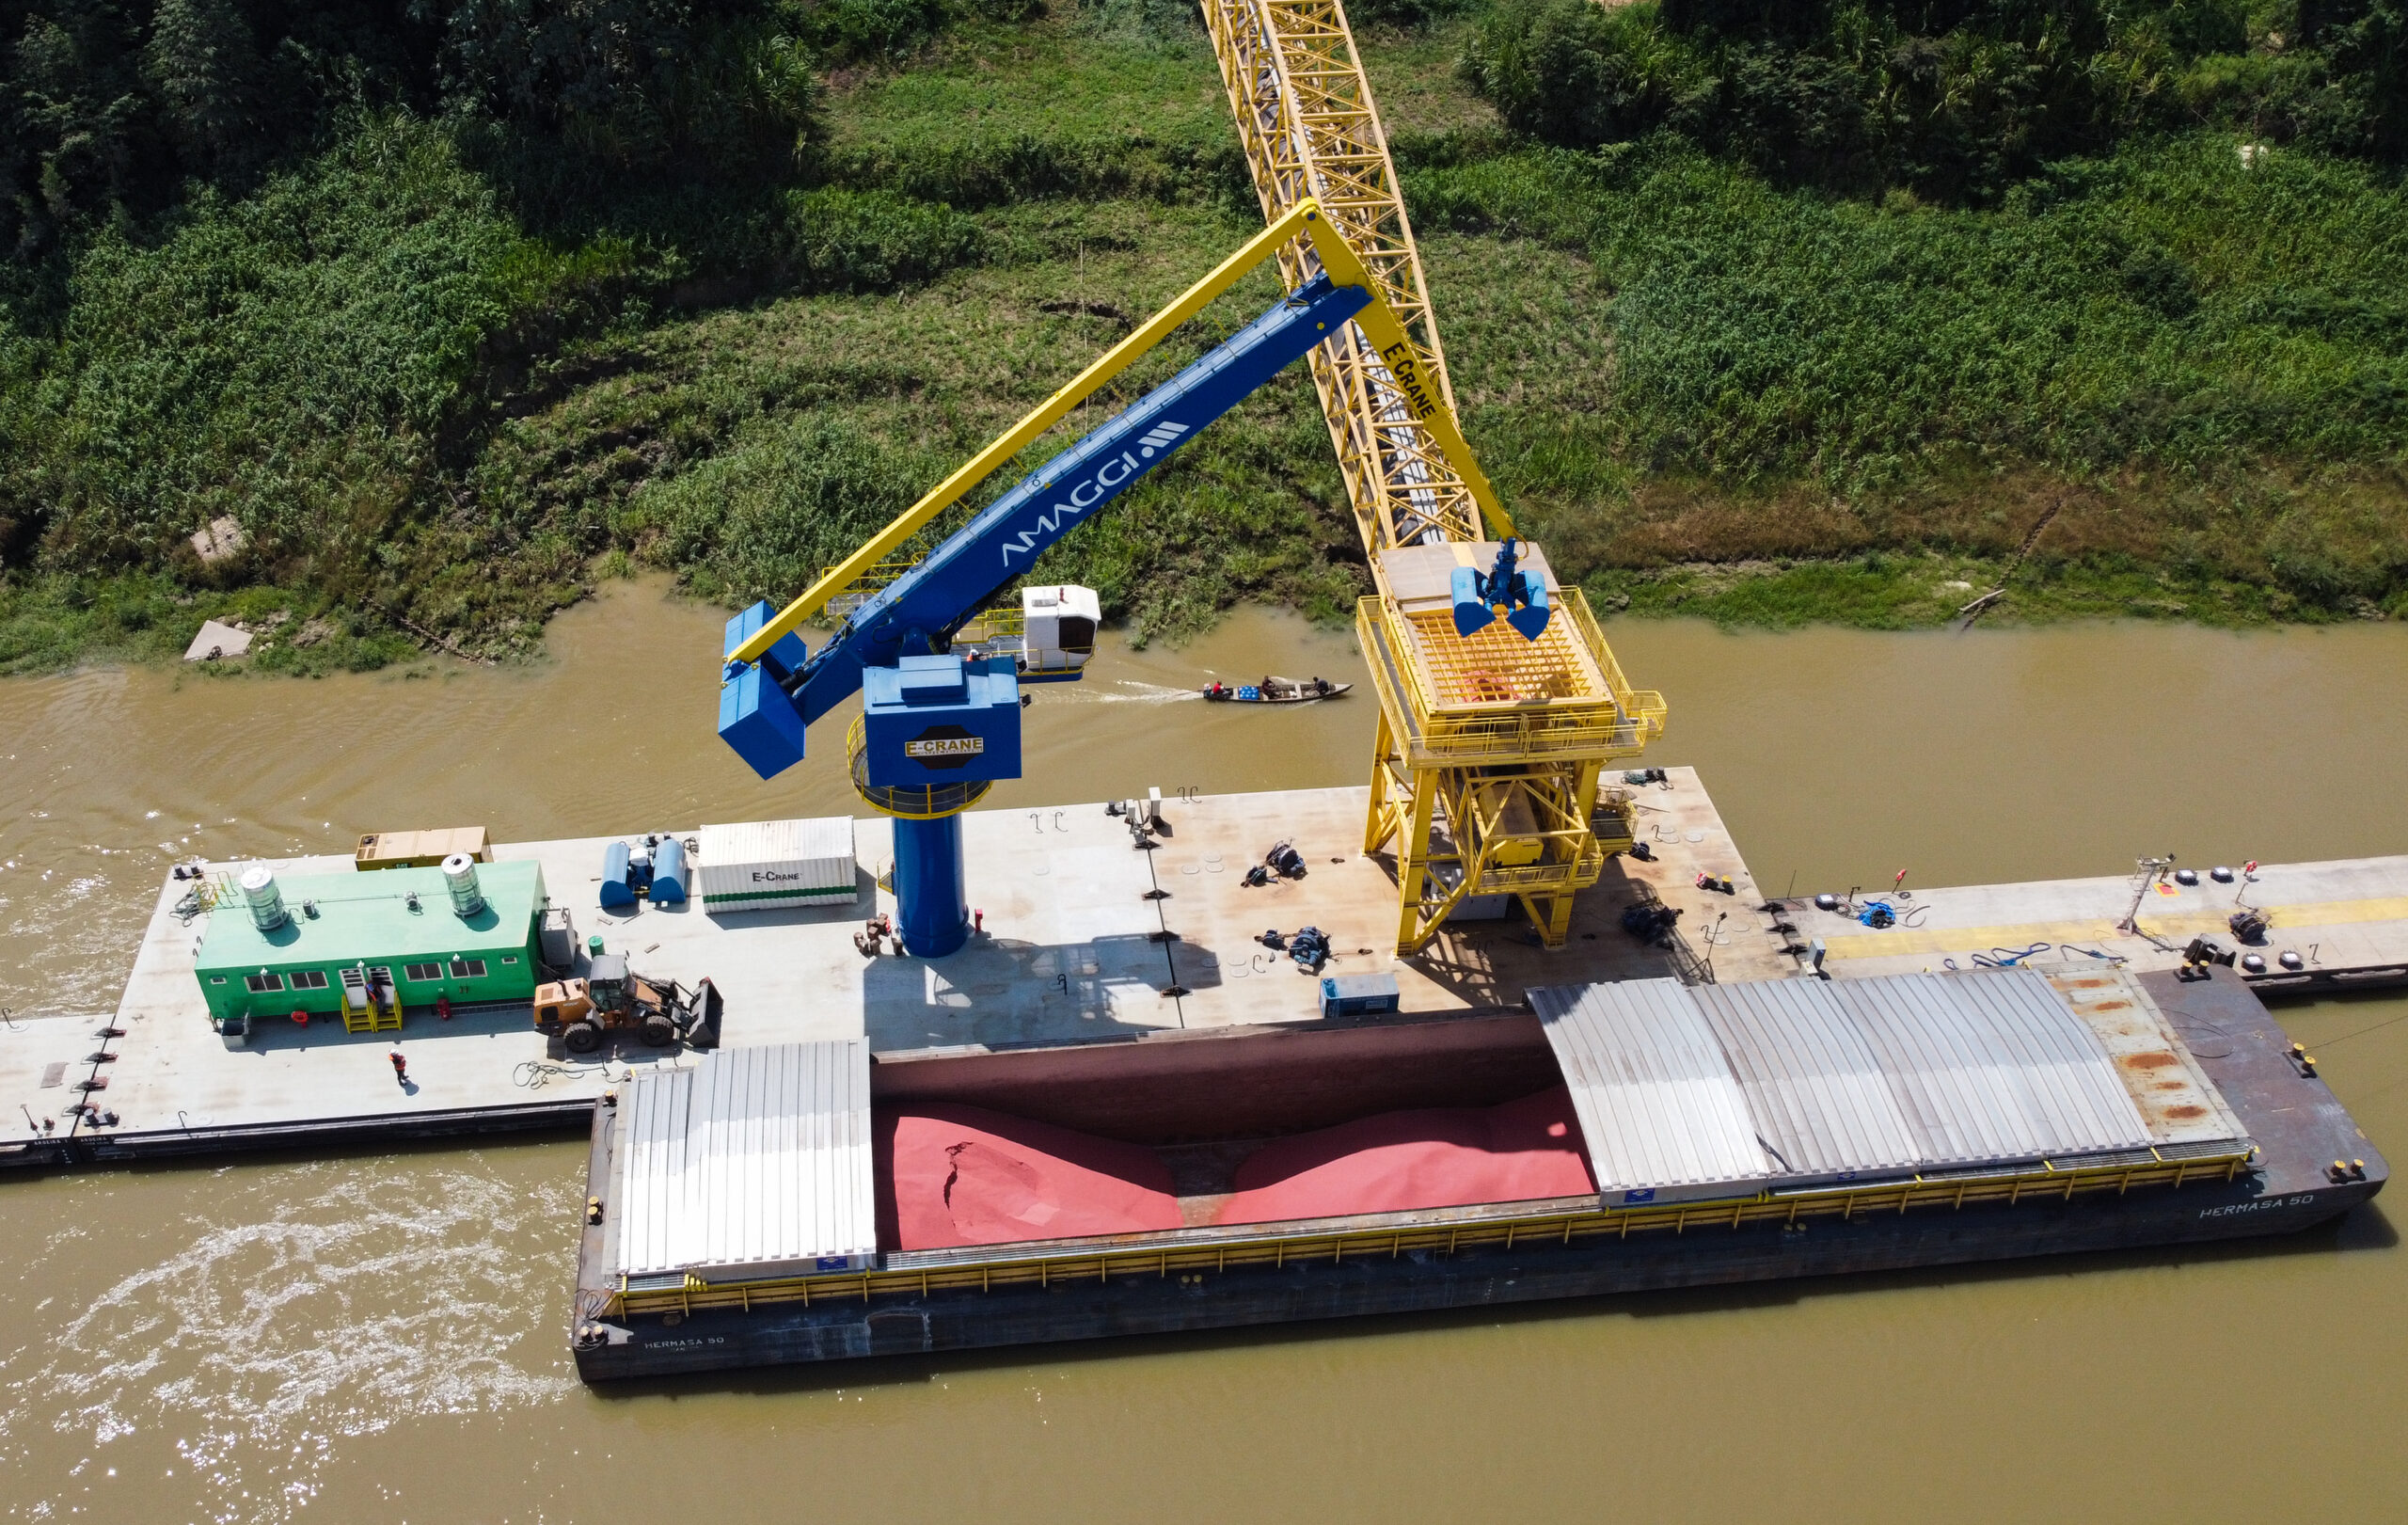 Carga de fertilizantes sendo retirada pela balsa-guindaste do interior de uma barcaça no complexo de Portochuelo, Porto Velho (RO)